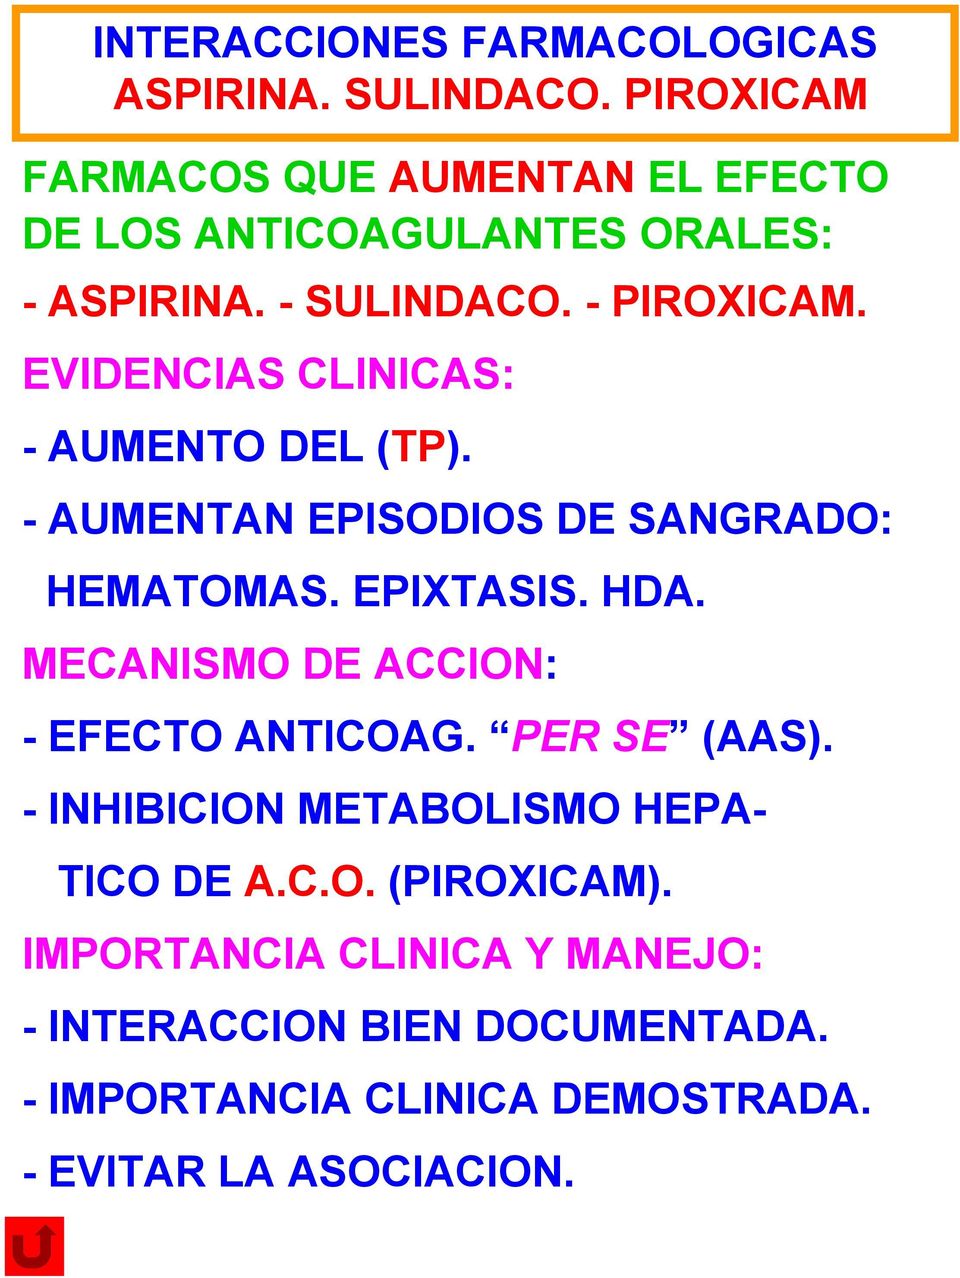 MECANISMO DE ACCION: - EFECTO ANTICOAG. PER SE (AAS). - INHIBICION METABOLISMO HEPA- TICO DE A.C.O. (PIROXICAM).